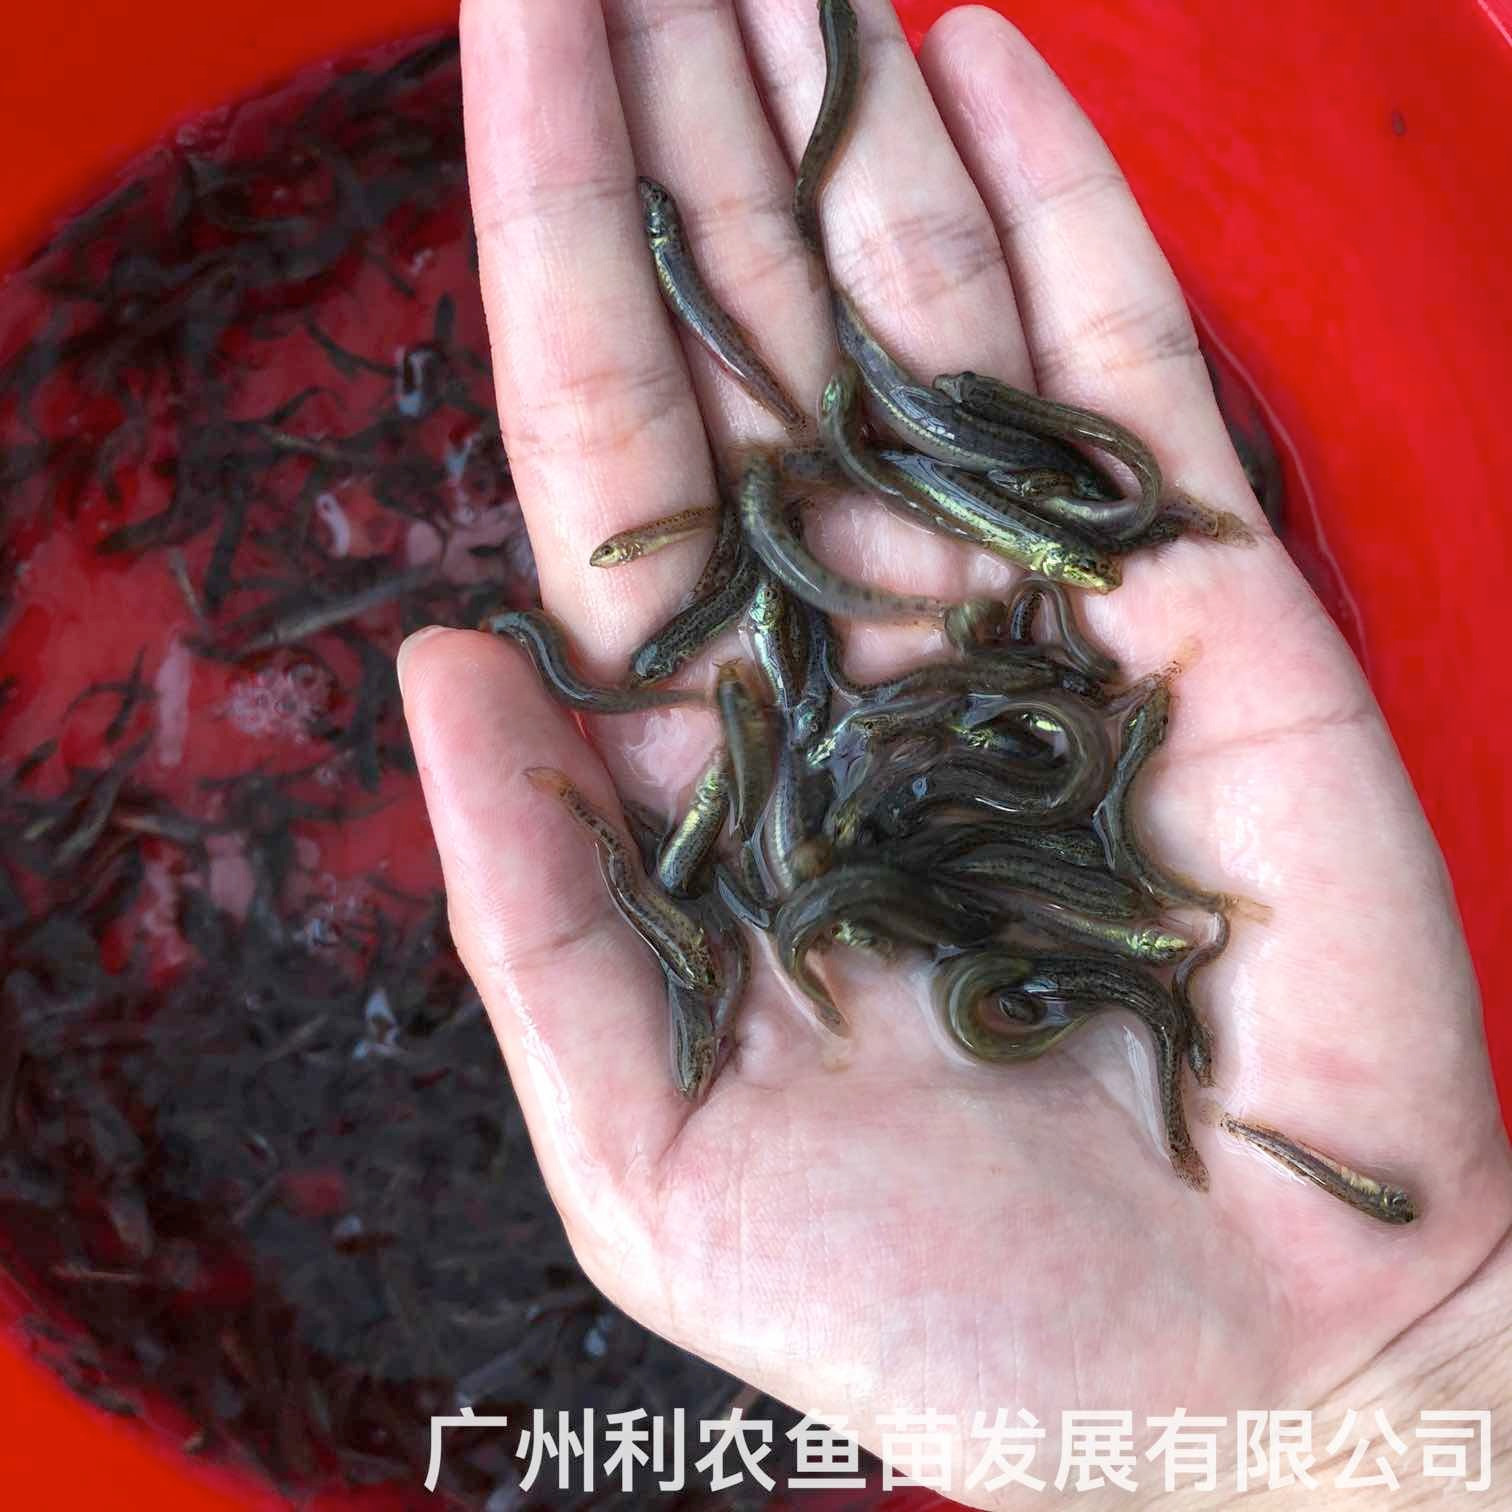 江西九江台湾泥鳅苗出售出售江西鹰潭泥鳅鱼苗批发养殖基地